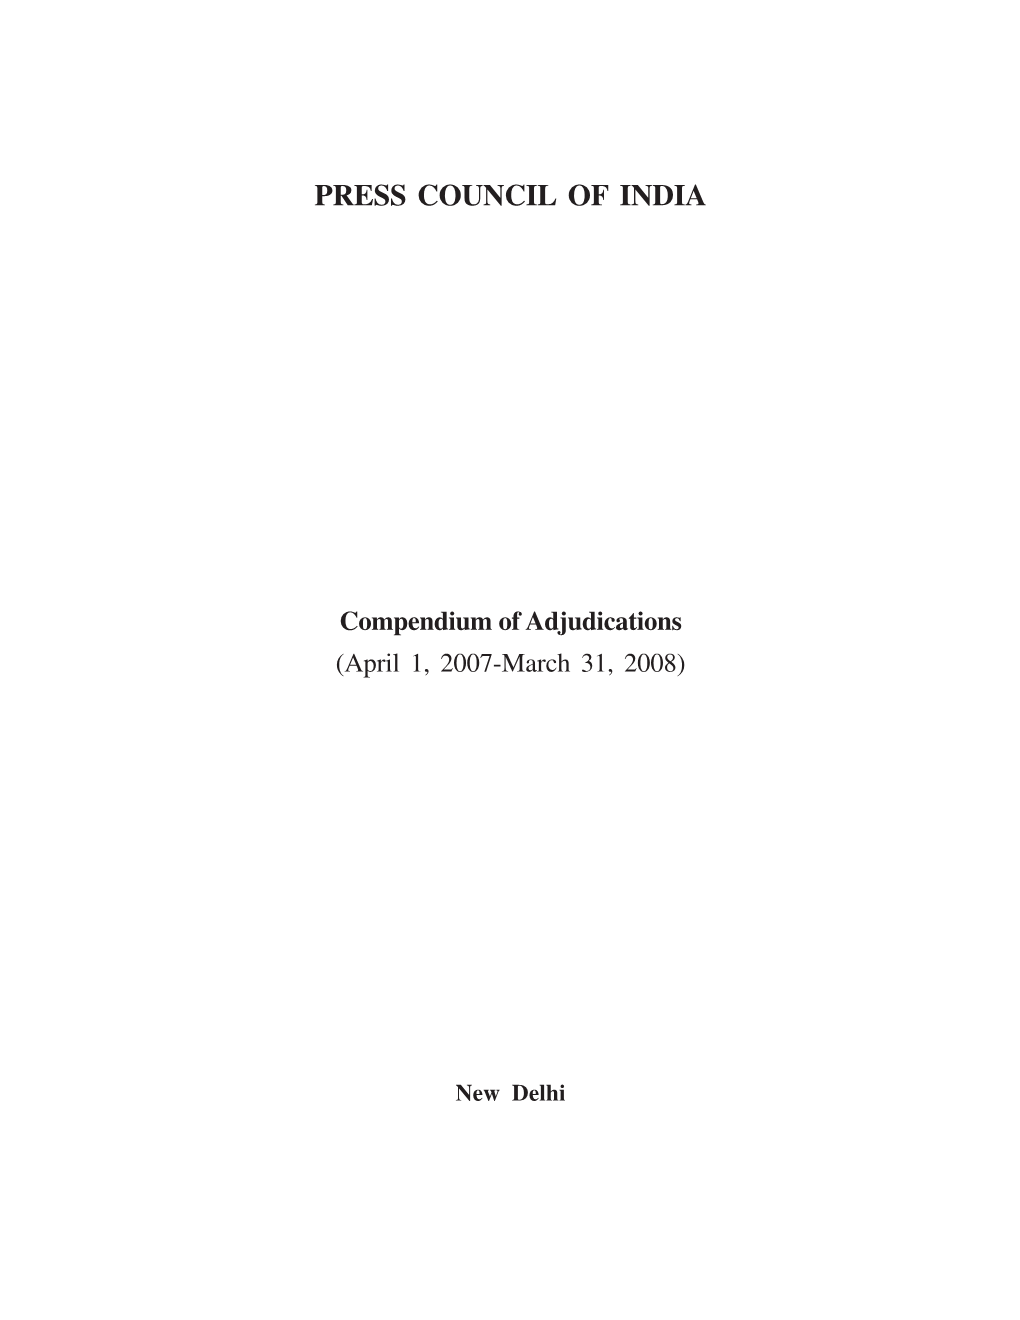 Compendium of Adjudications 2007-2008